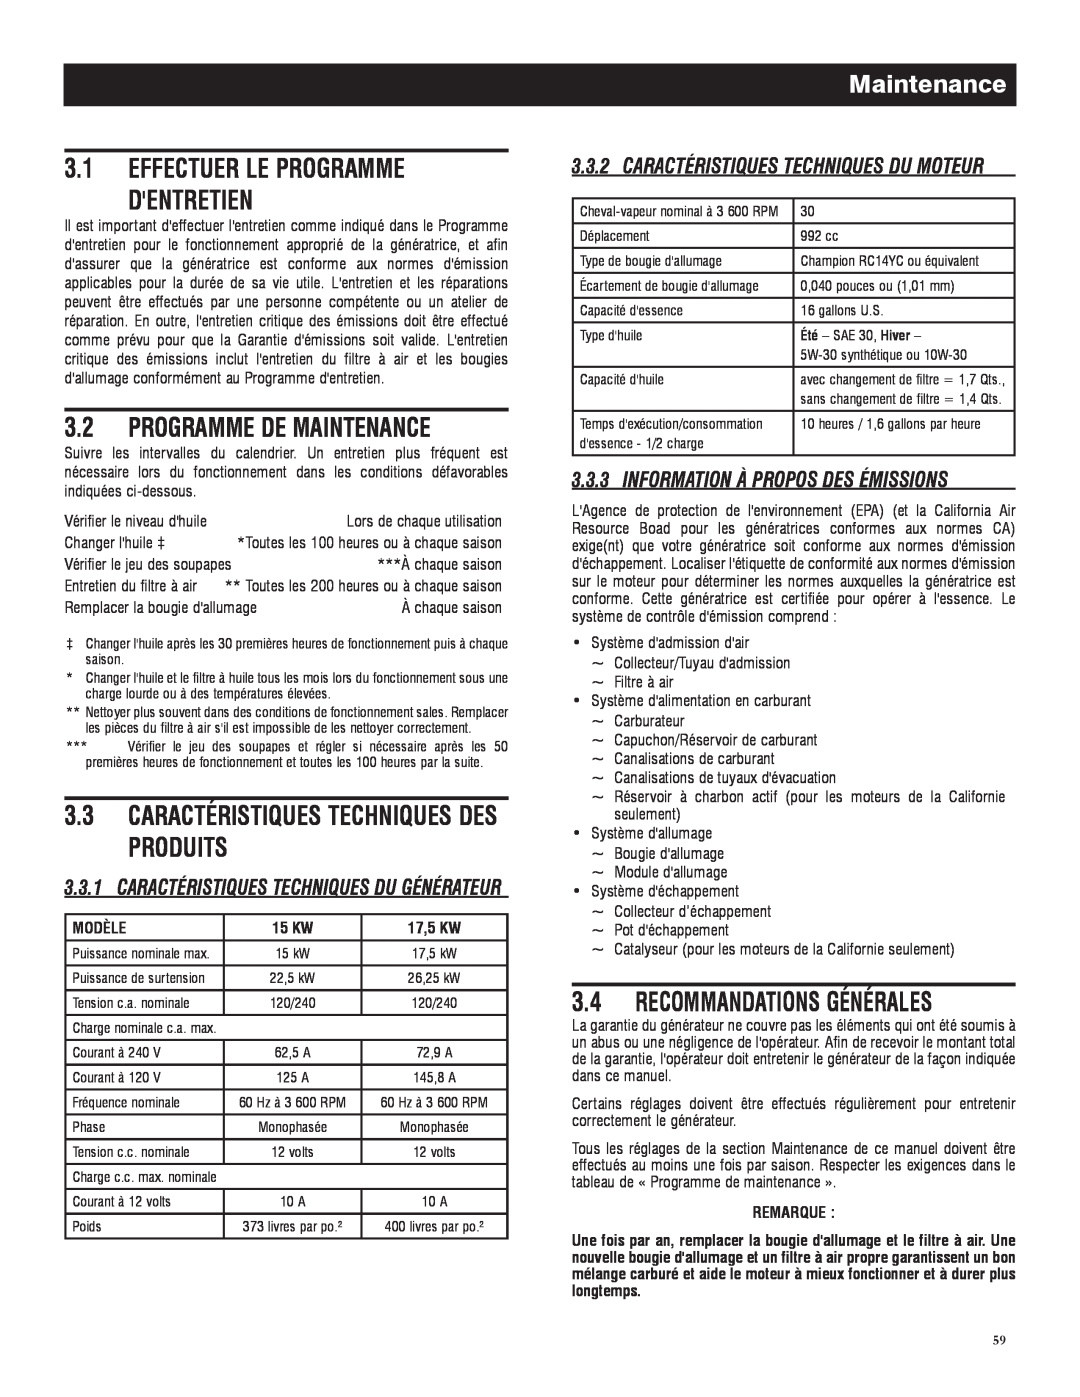 Generac 005735-0 Effectuer Le Programme Dentretien, Programme De Maintenance, Caractéristiques Techniques Des Produits 